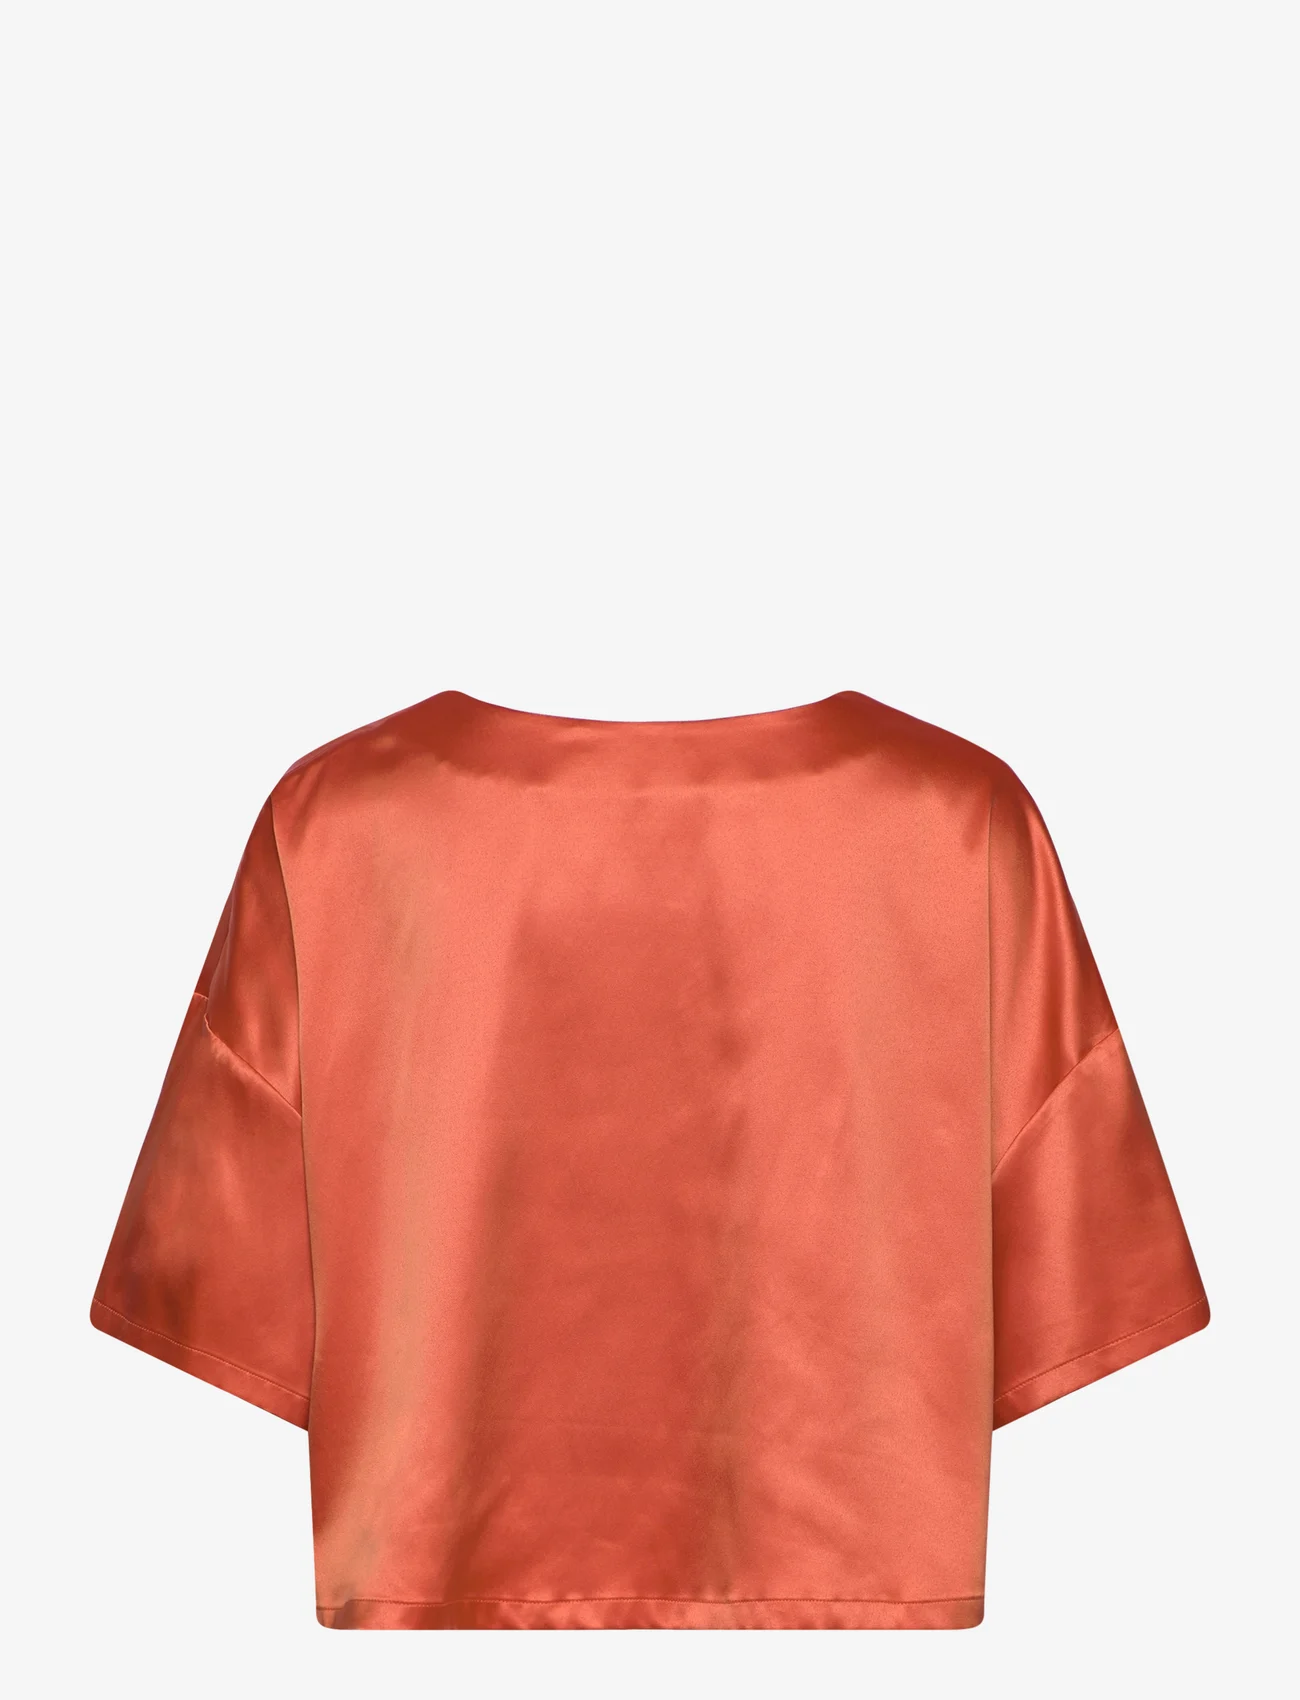 Stylein - MIMI T-SHIRT - blouses korte mouwen - coral - 1